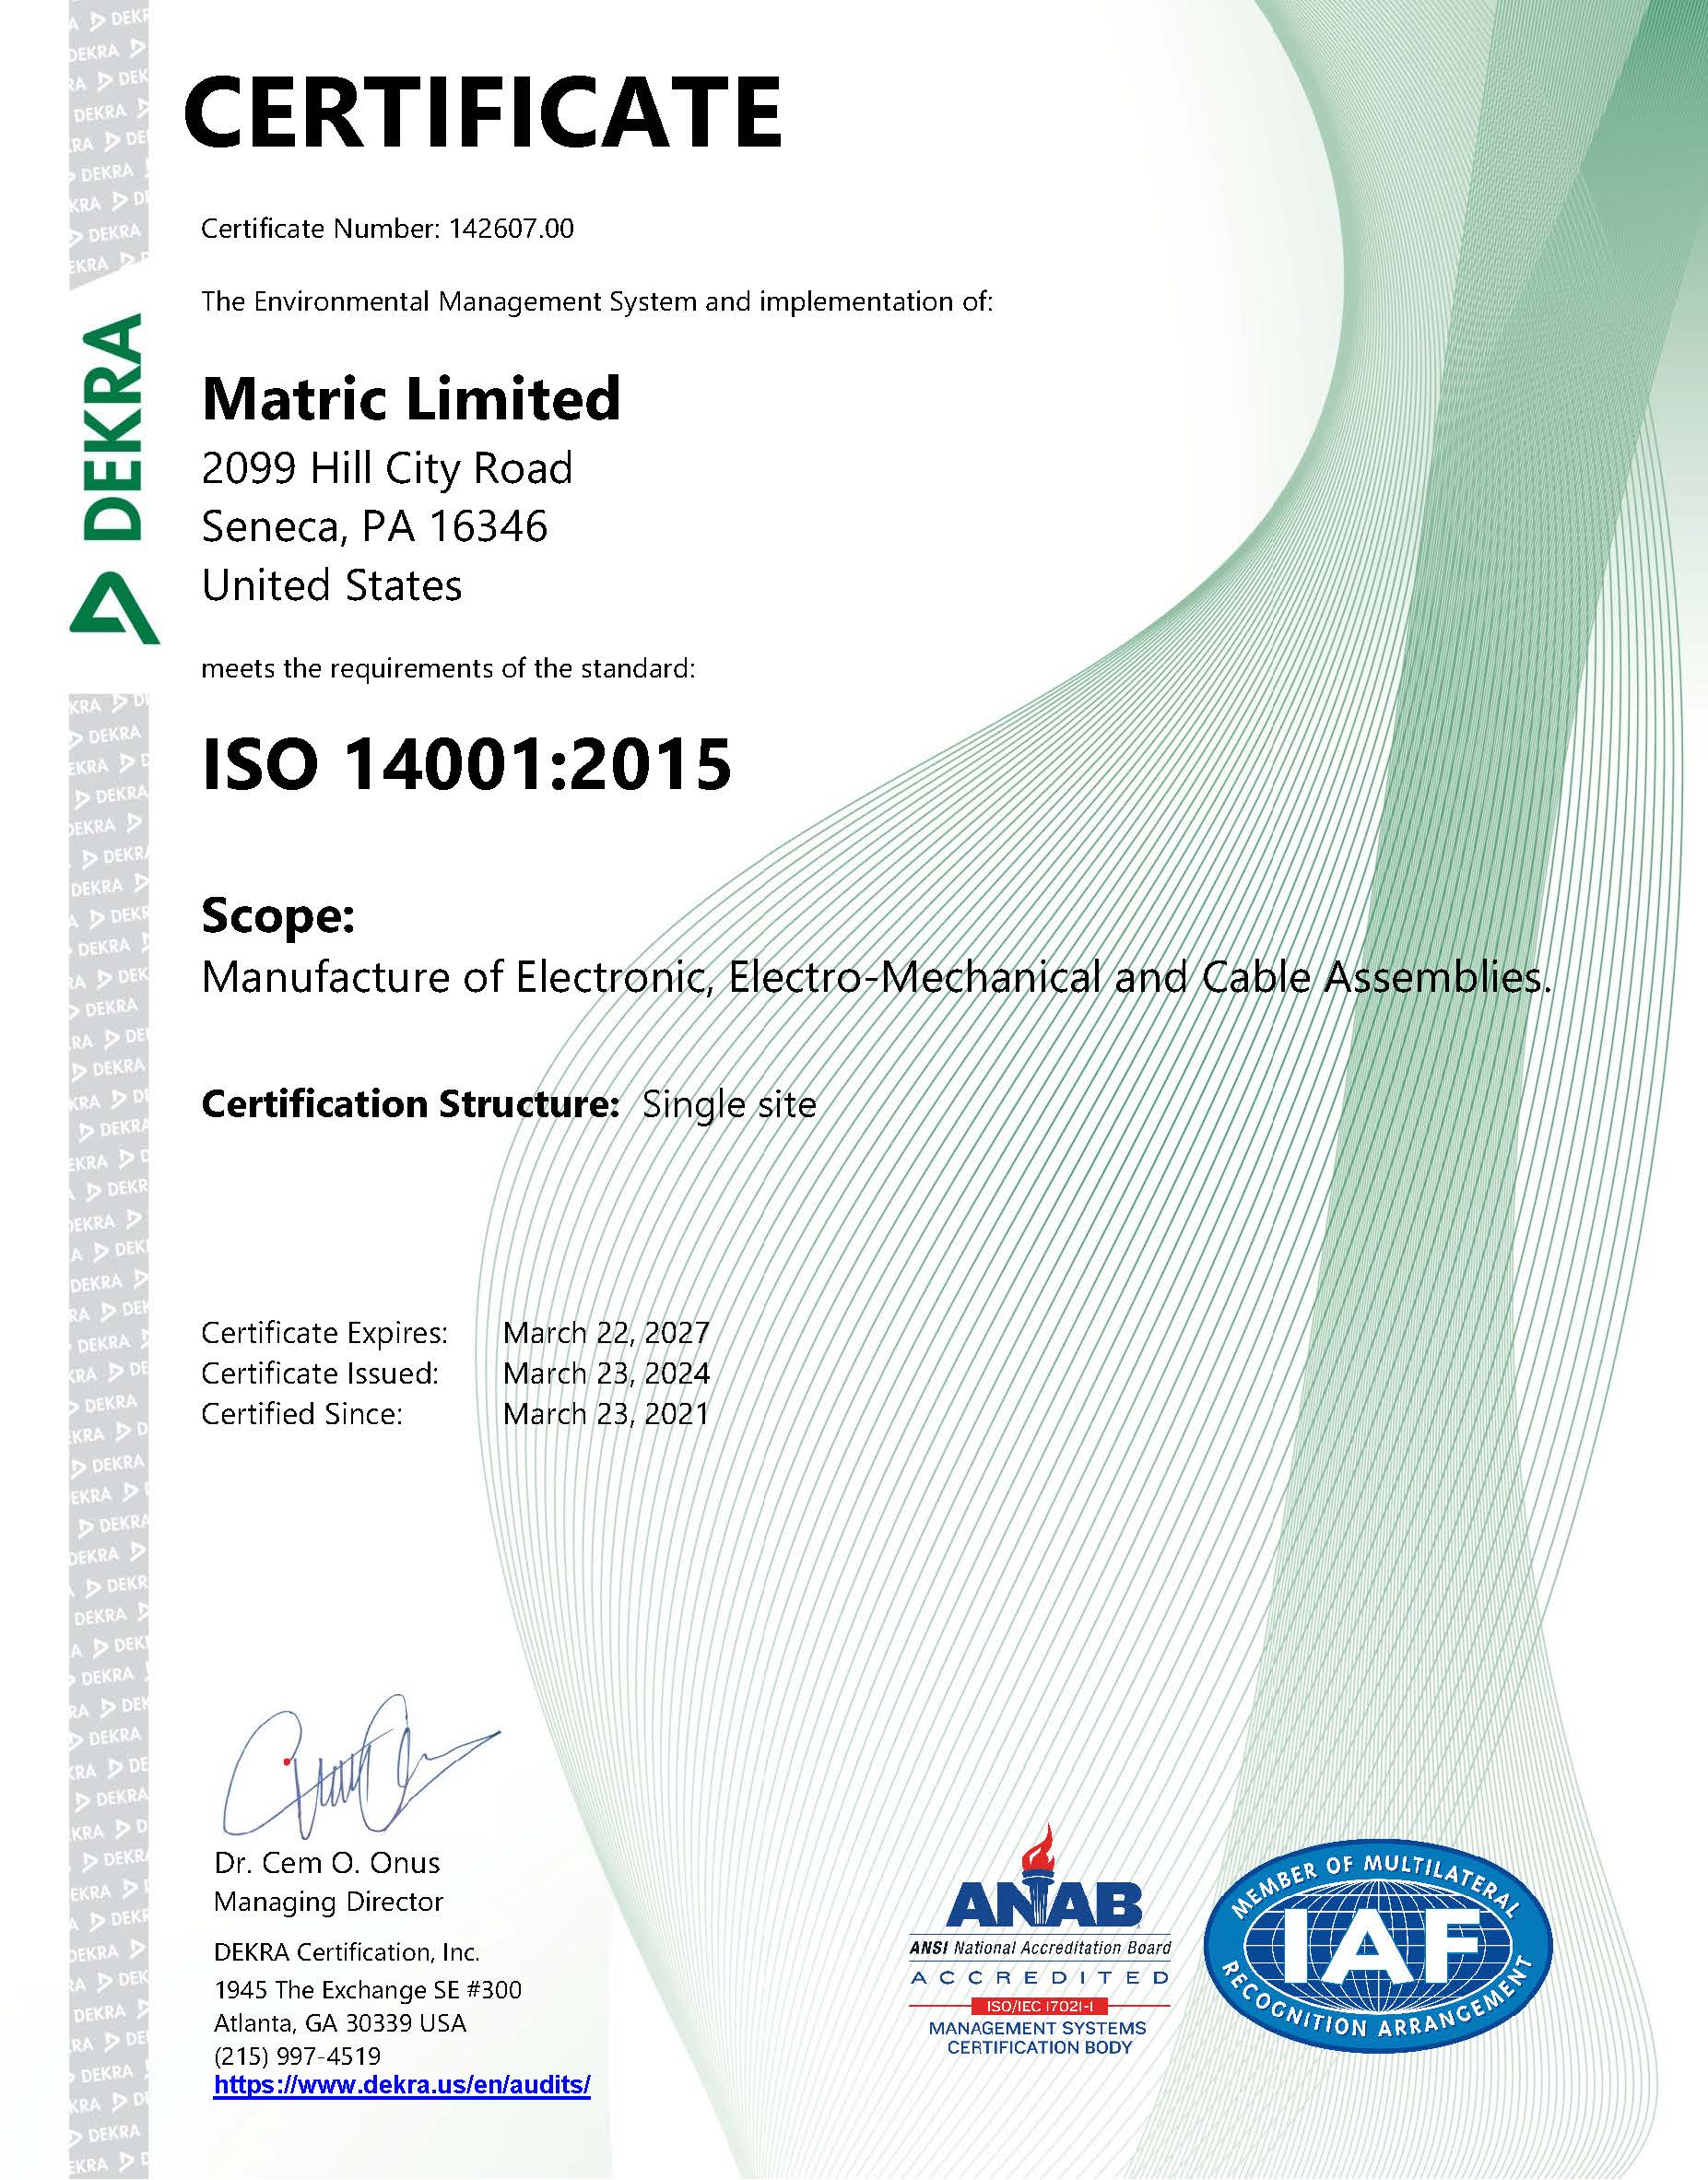 Data 01-07 Rev 1 14001-2015 Certificate Reissued January 23, 2024